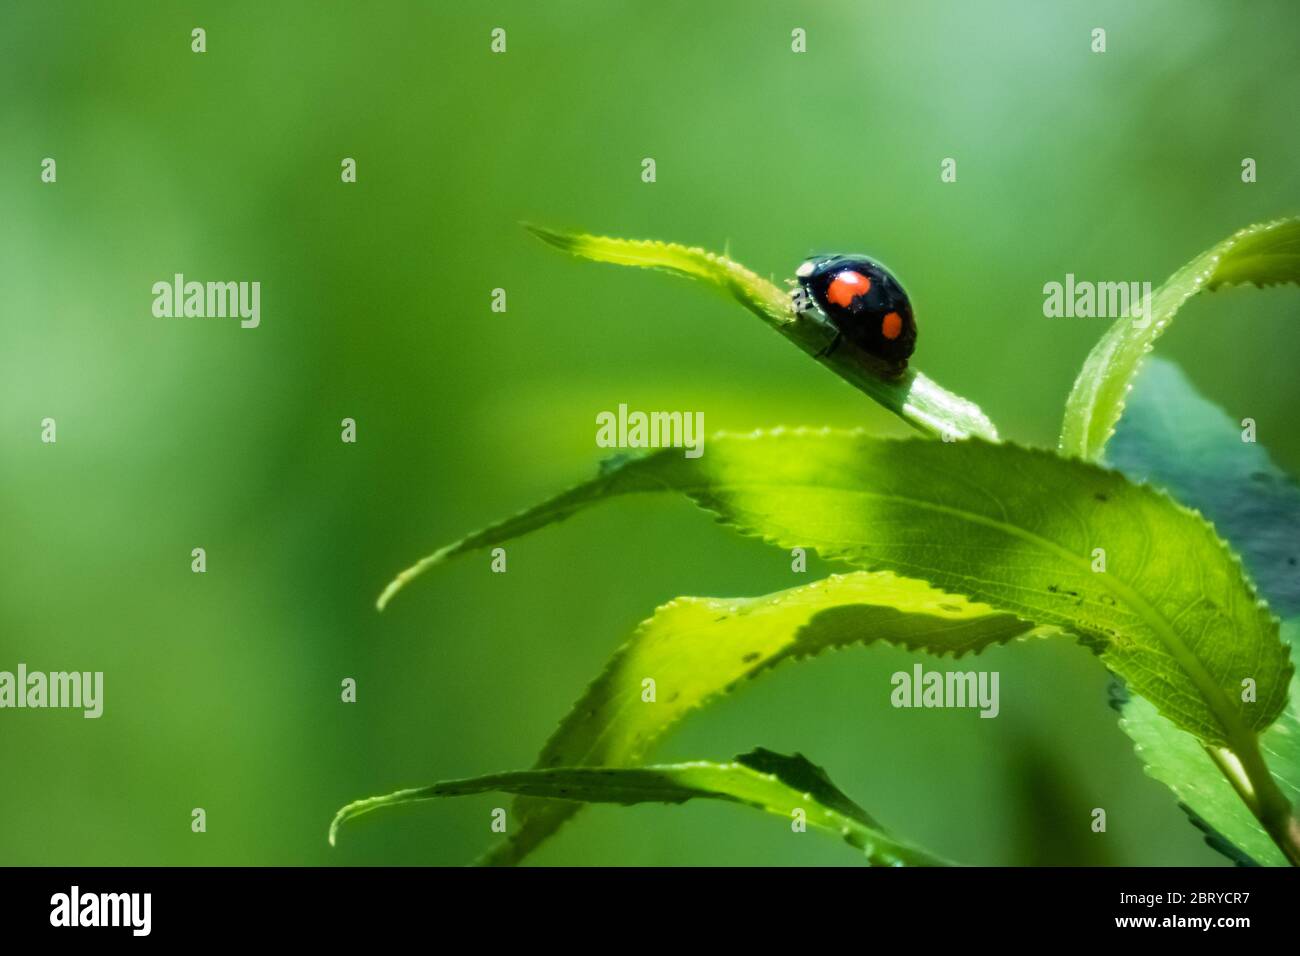 Primo piano di un ladybug due volte-pugnale seduto su una foglia. Scena naturale di colore verde, con copyspace sul lato sinistro. Foto Stock